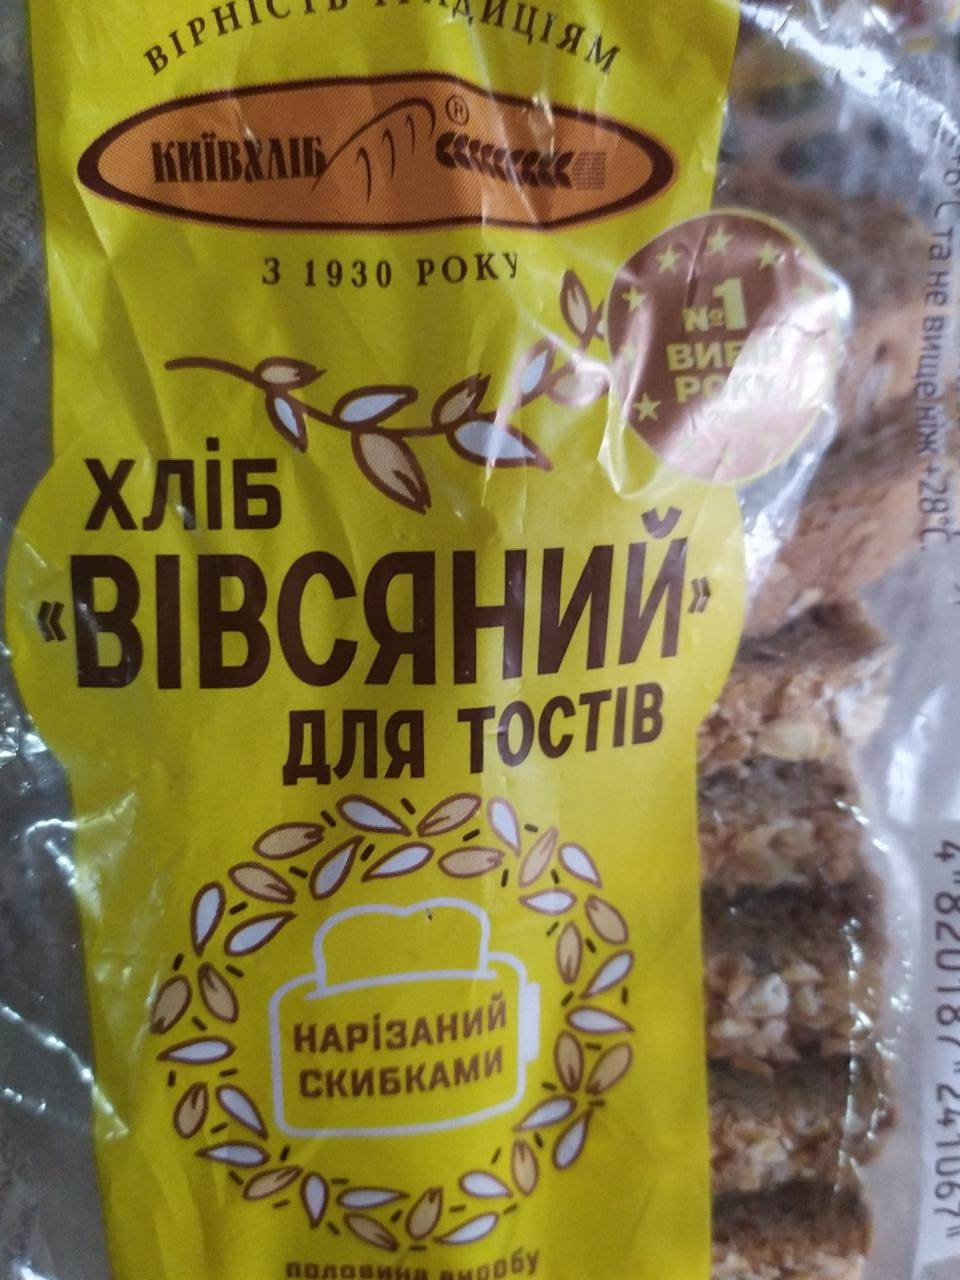 Фото - Хліб вівсяний для тостів (Хлеб овсяный для тостов) Київхліб